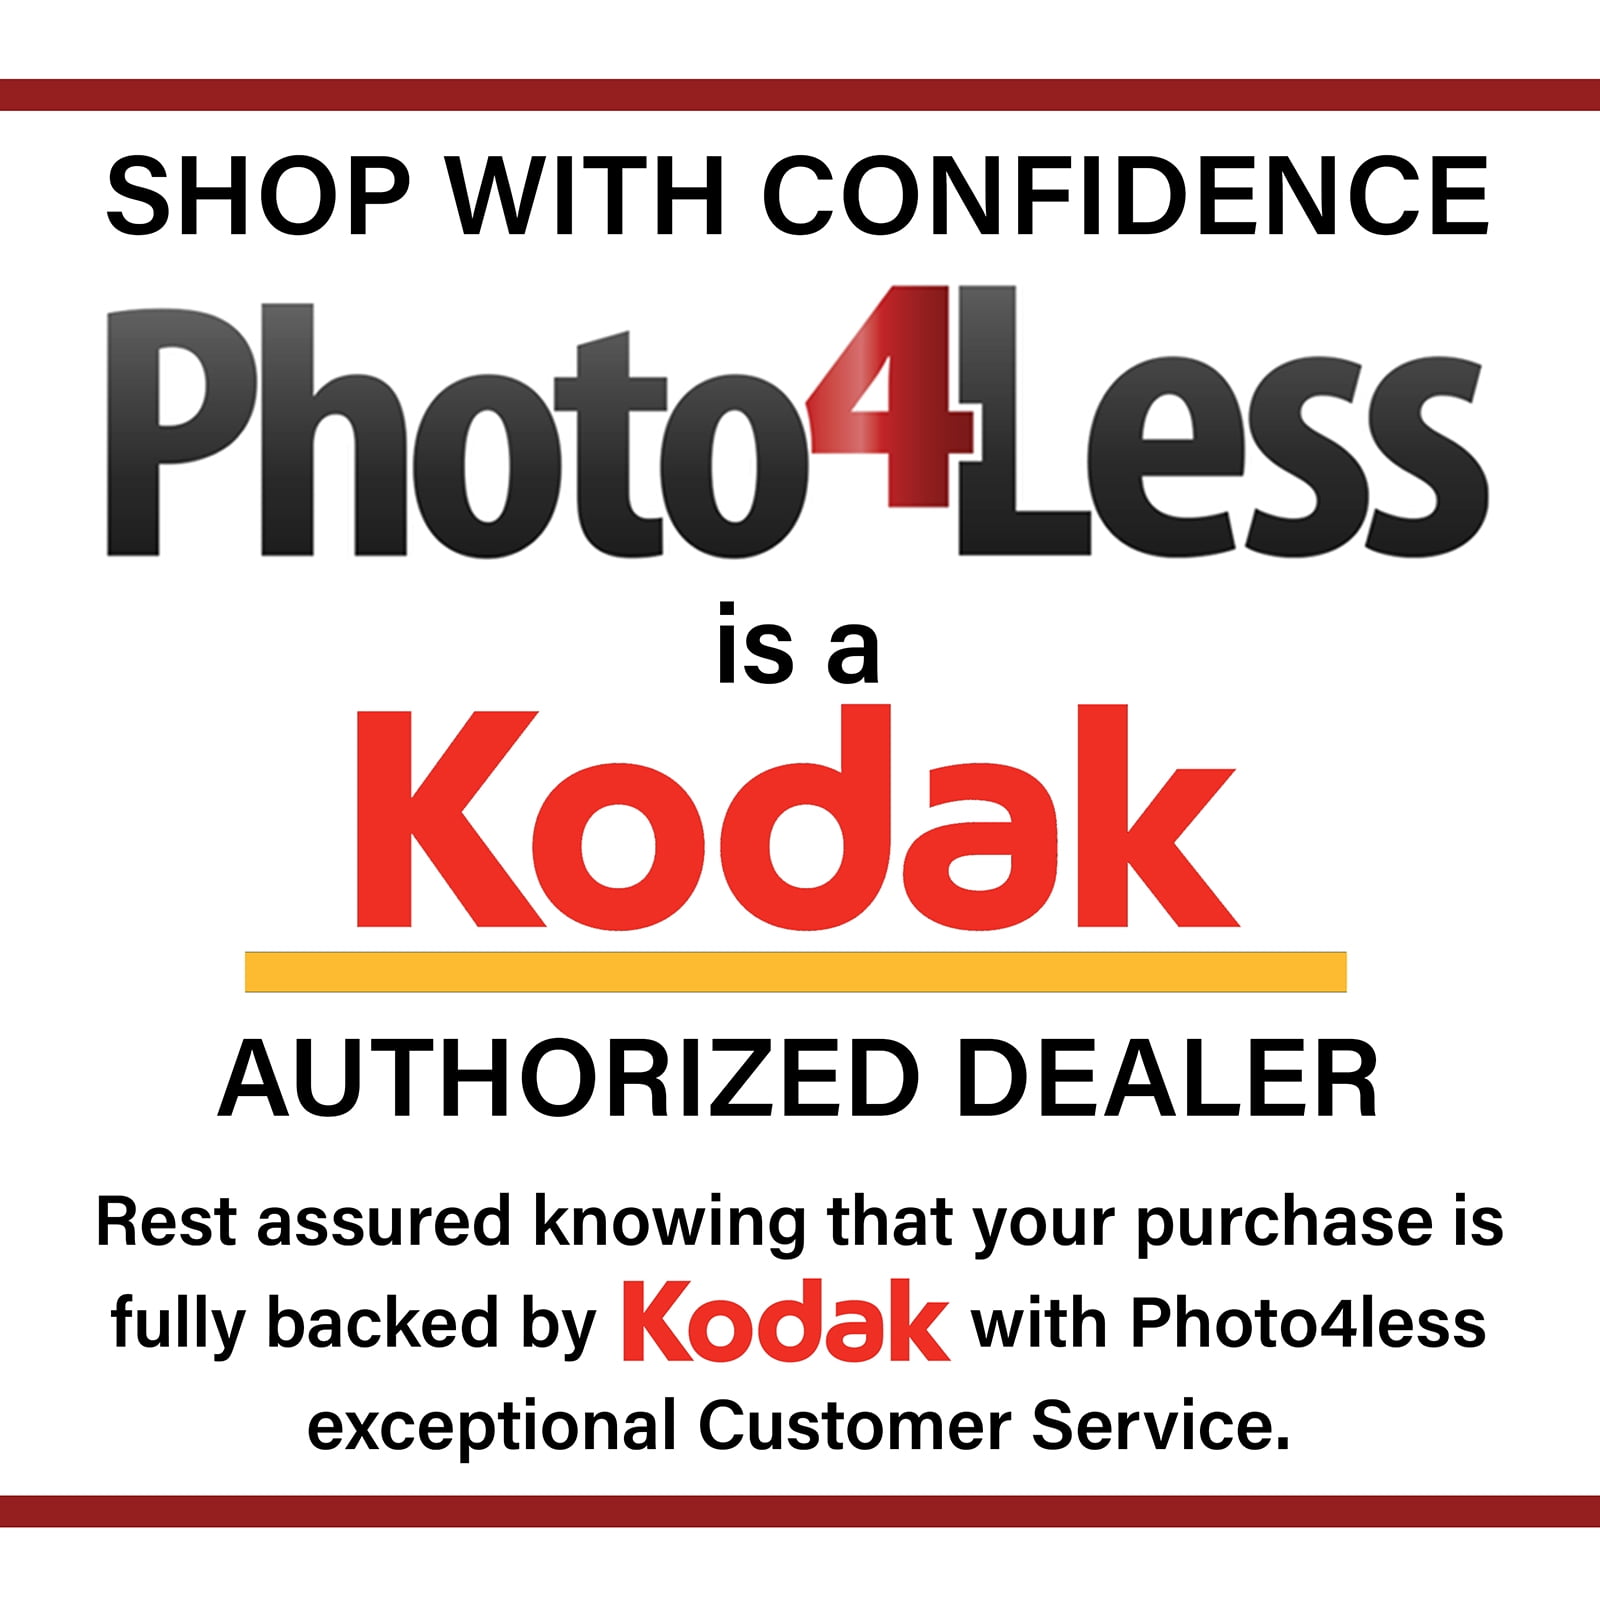 Kodak Cámara Digital Pixpro Fz53 Roja - 16mpx con Ofertas en Carrefour